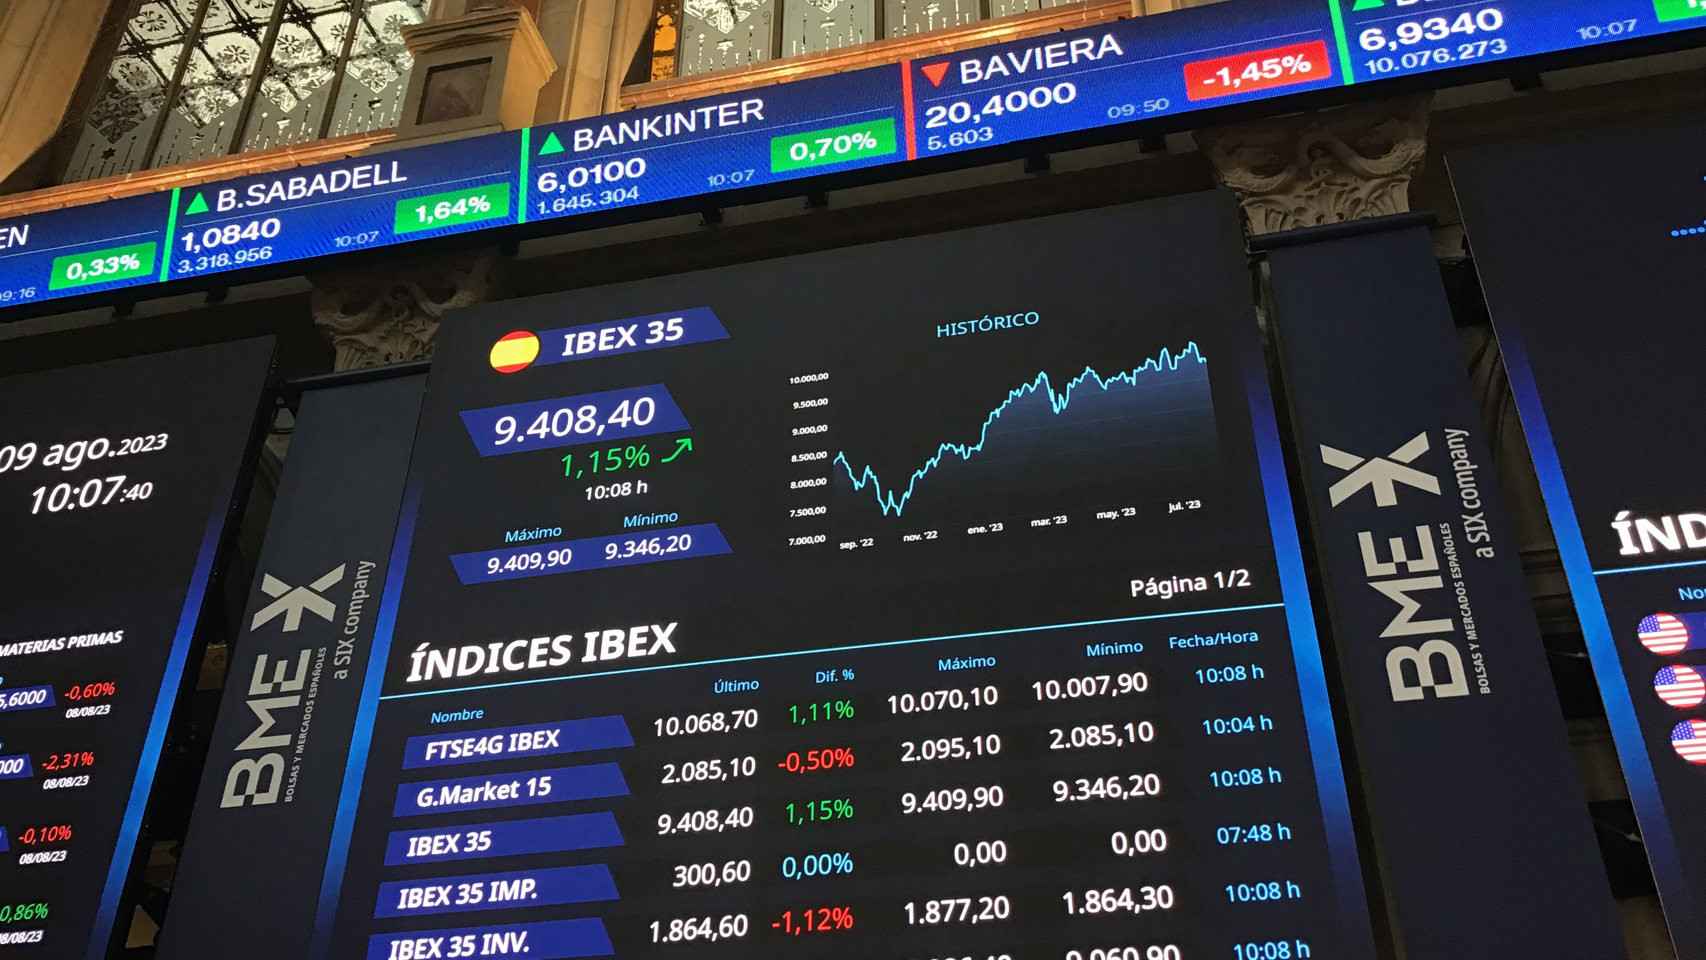 Panel del Ibex 35 en el interior del Palacio de la Bolsa en Madrid.